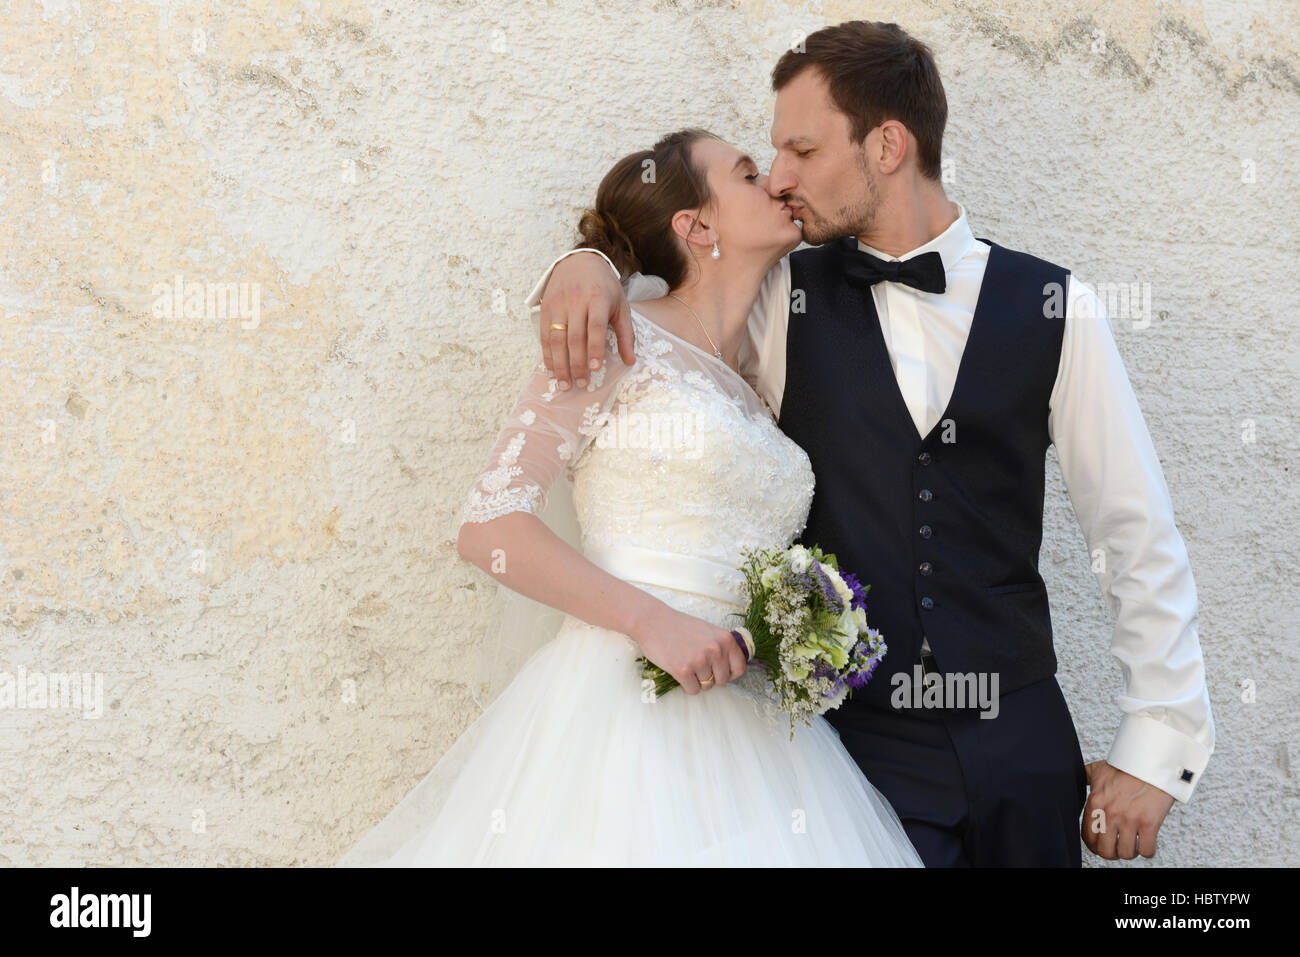 Kissing appena una coppia sposata Foto Stock